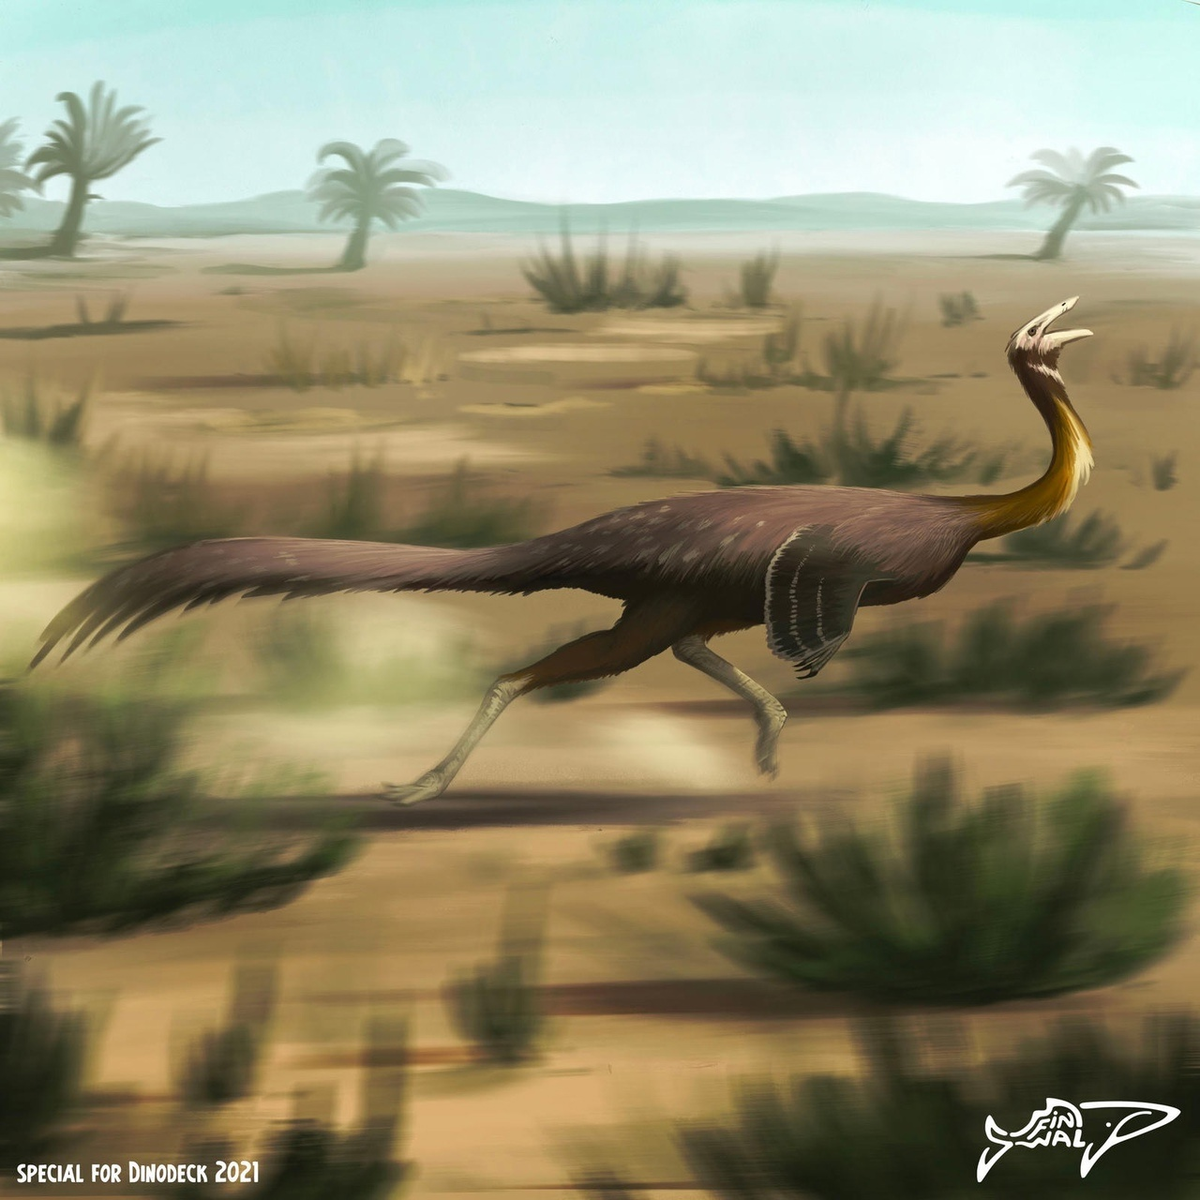 Галлимим: Дино-страус, развивавший скорость в 56 км/ч. Один из самых быстрых динозавров за всю историю!